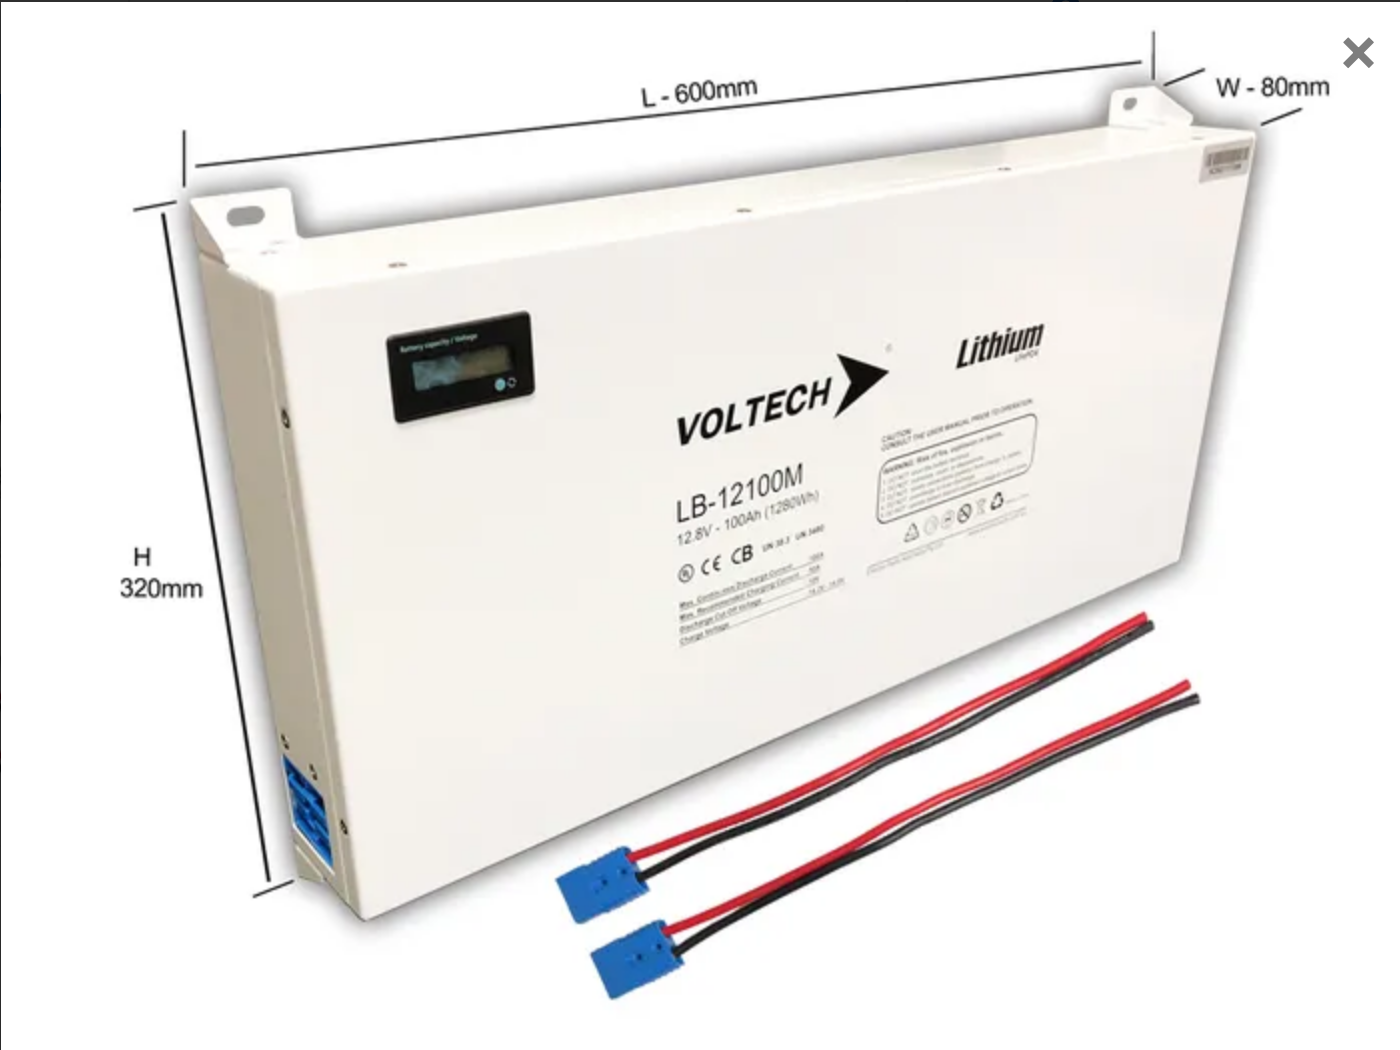 Voltech Lithium LiFePO4 Battery - 12.8V/100Ah - Slimline